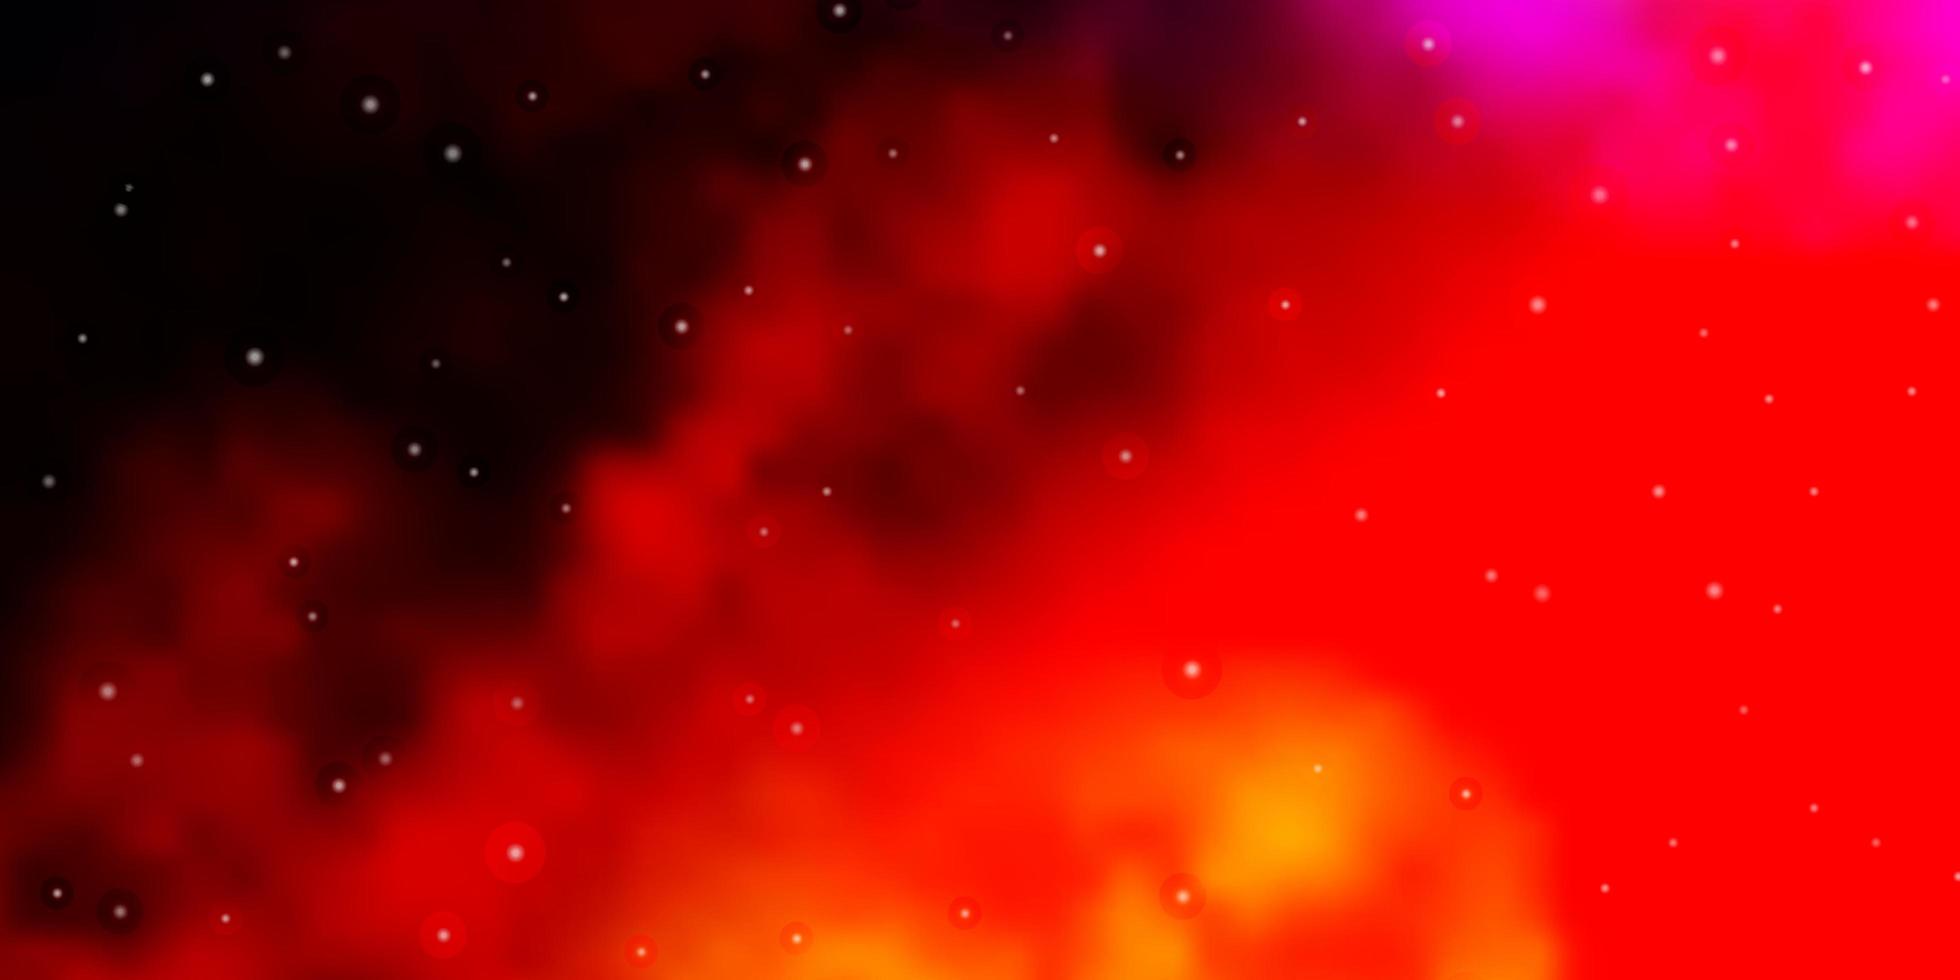 trama vettoriale rosso scuro con bellissime stelle.